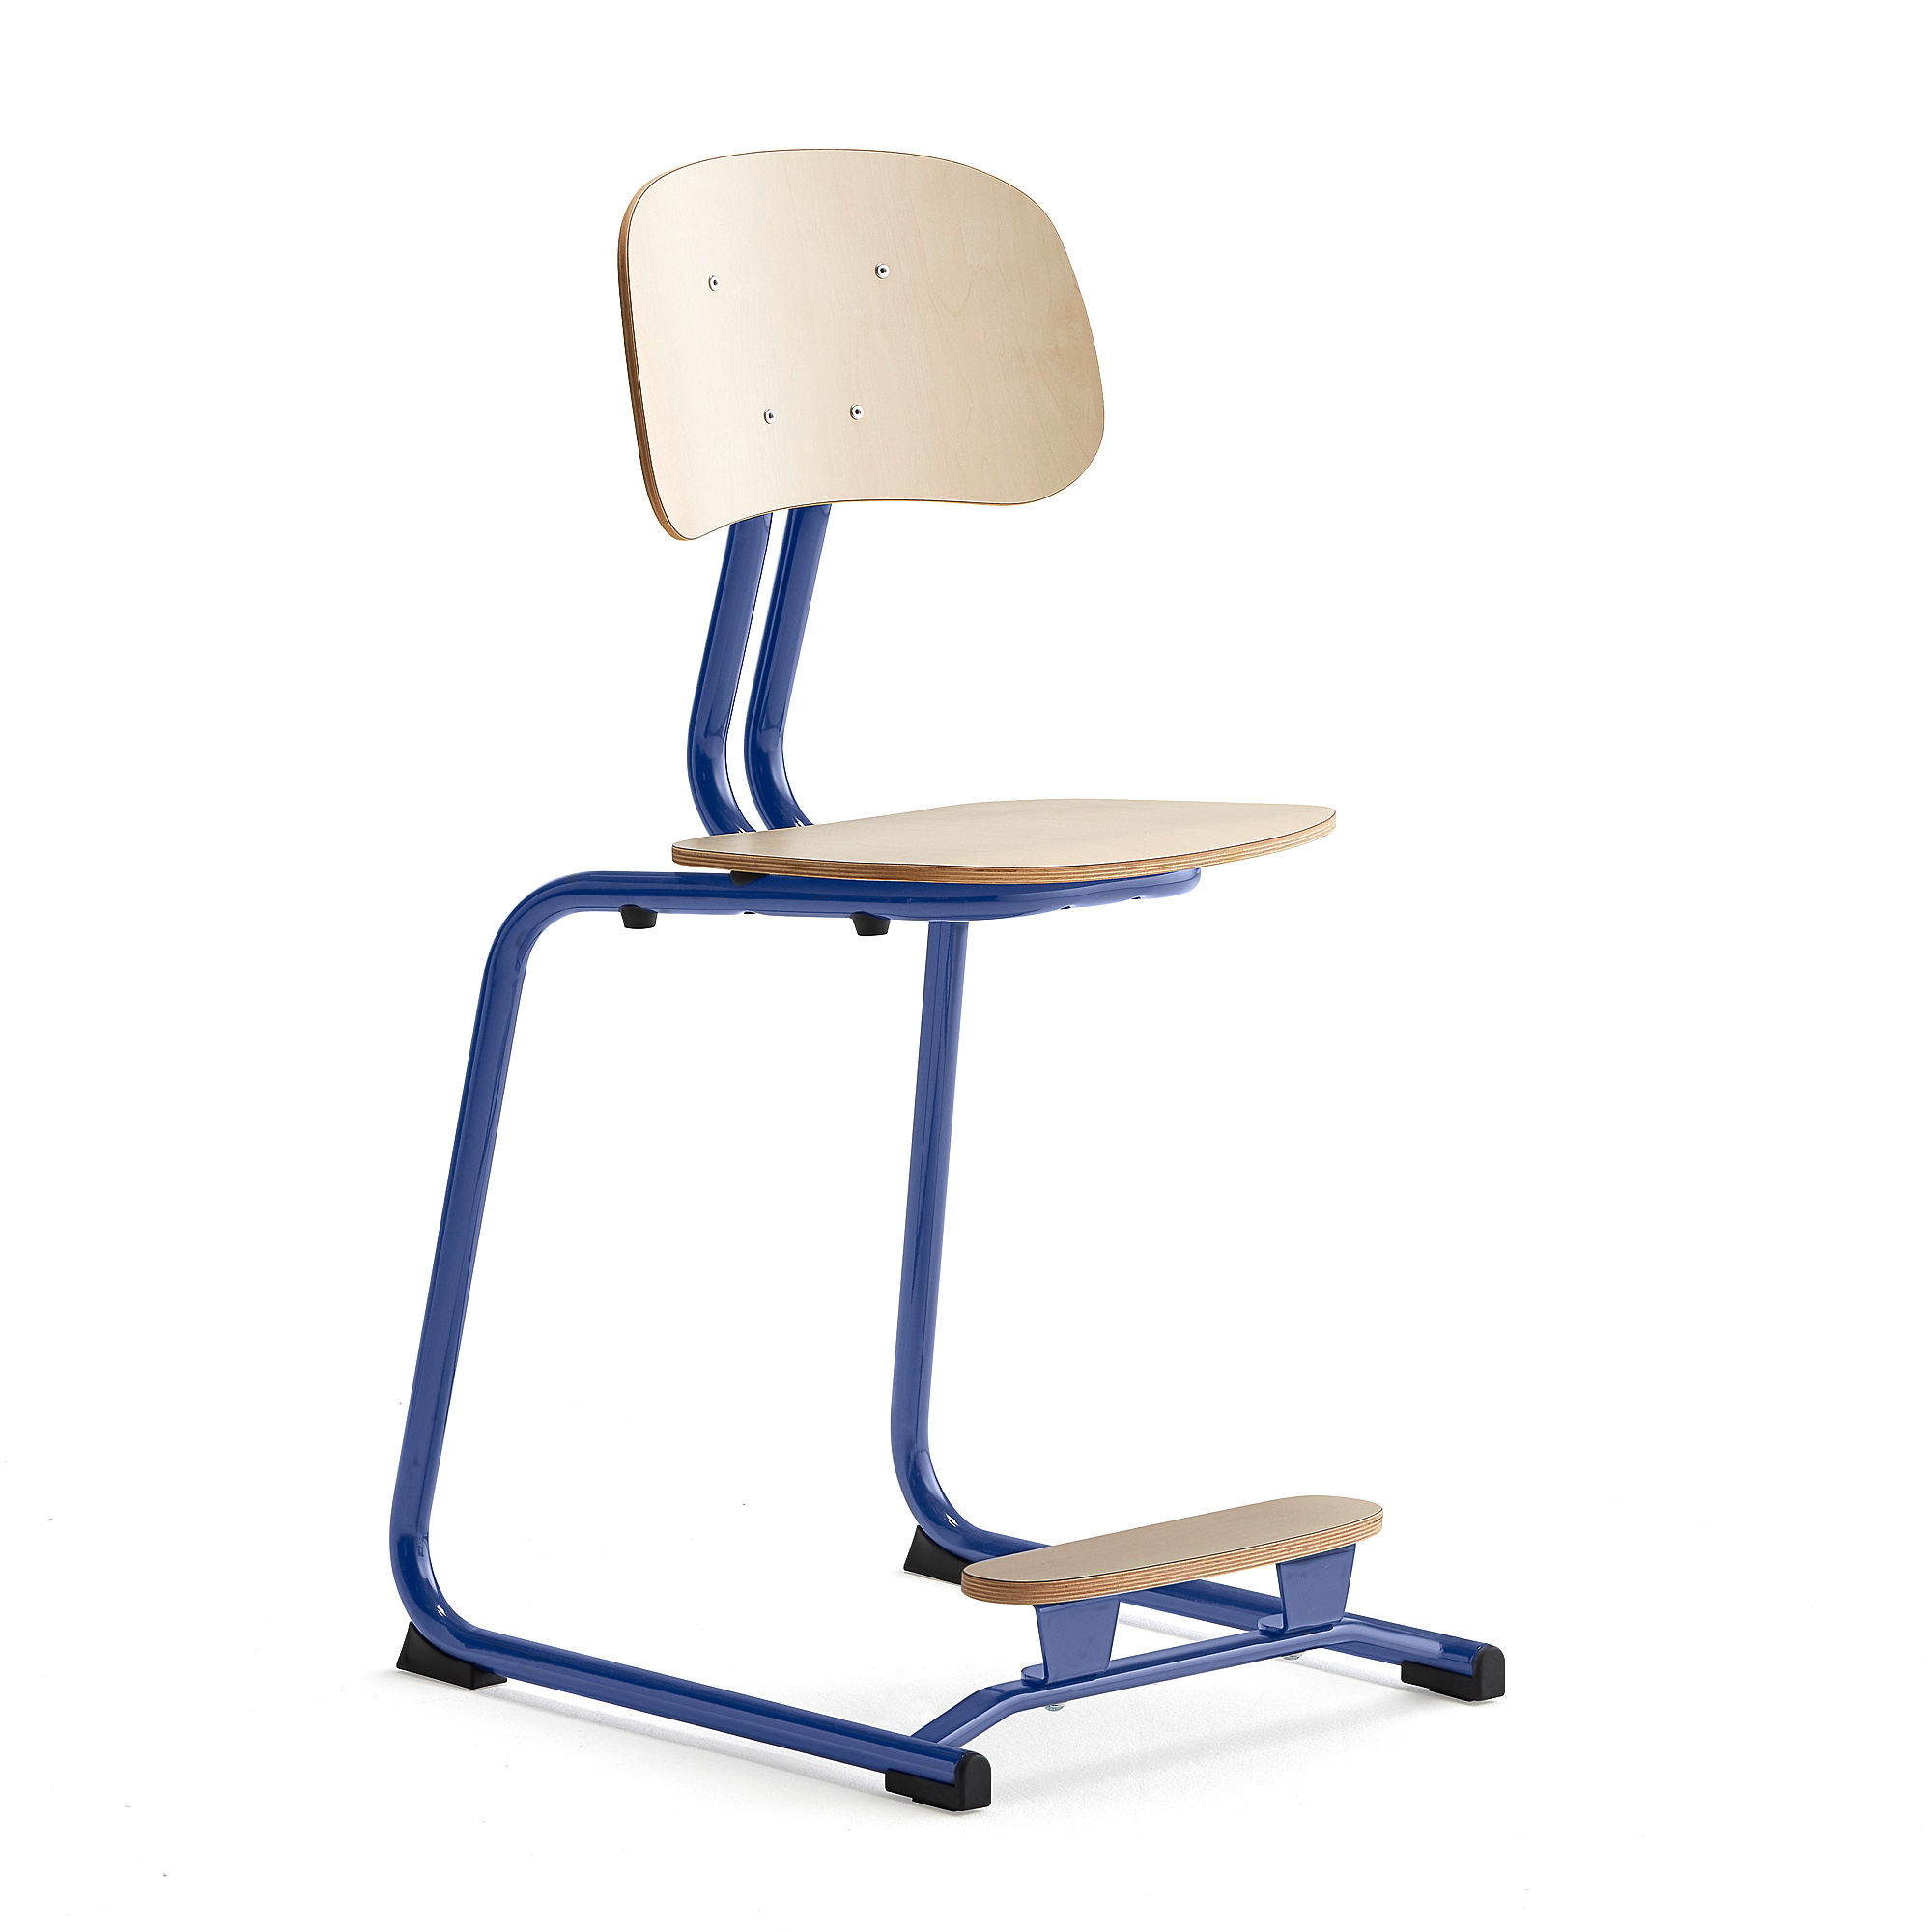 Školní židle YNGVE, ližinová podnož, výška 500 mm, tmavě modrá/bříza